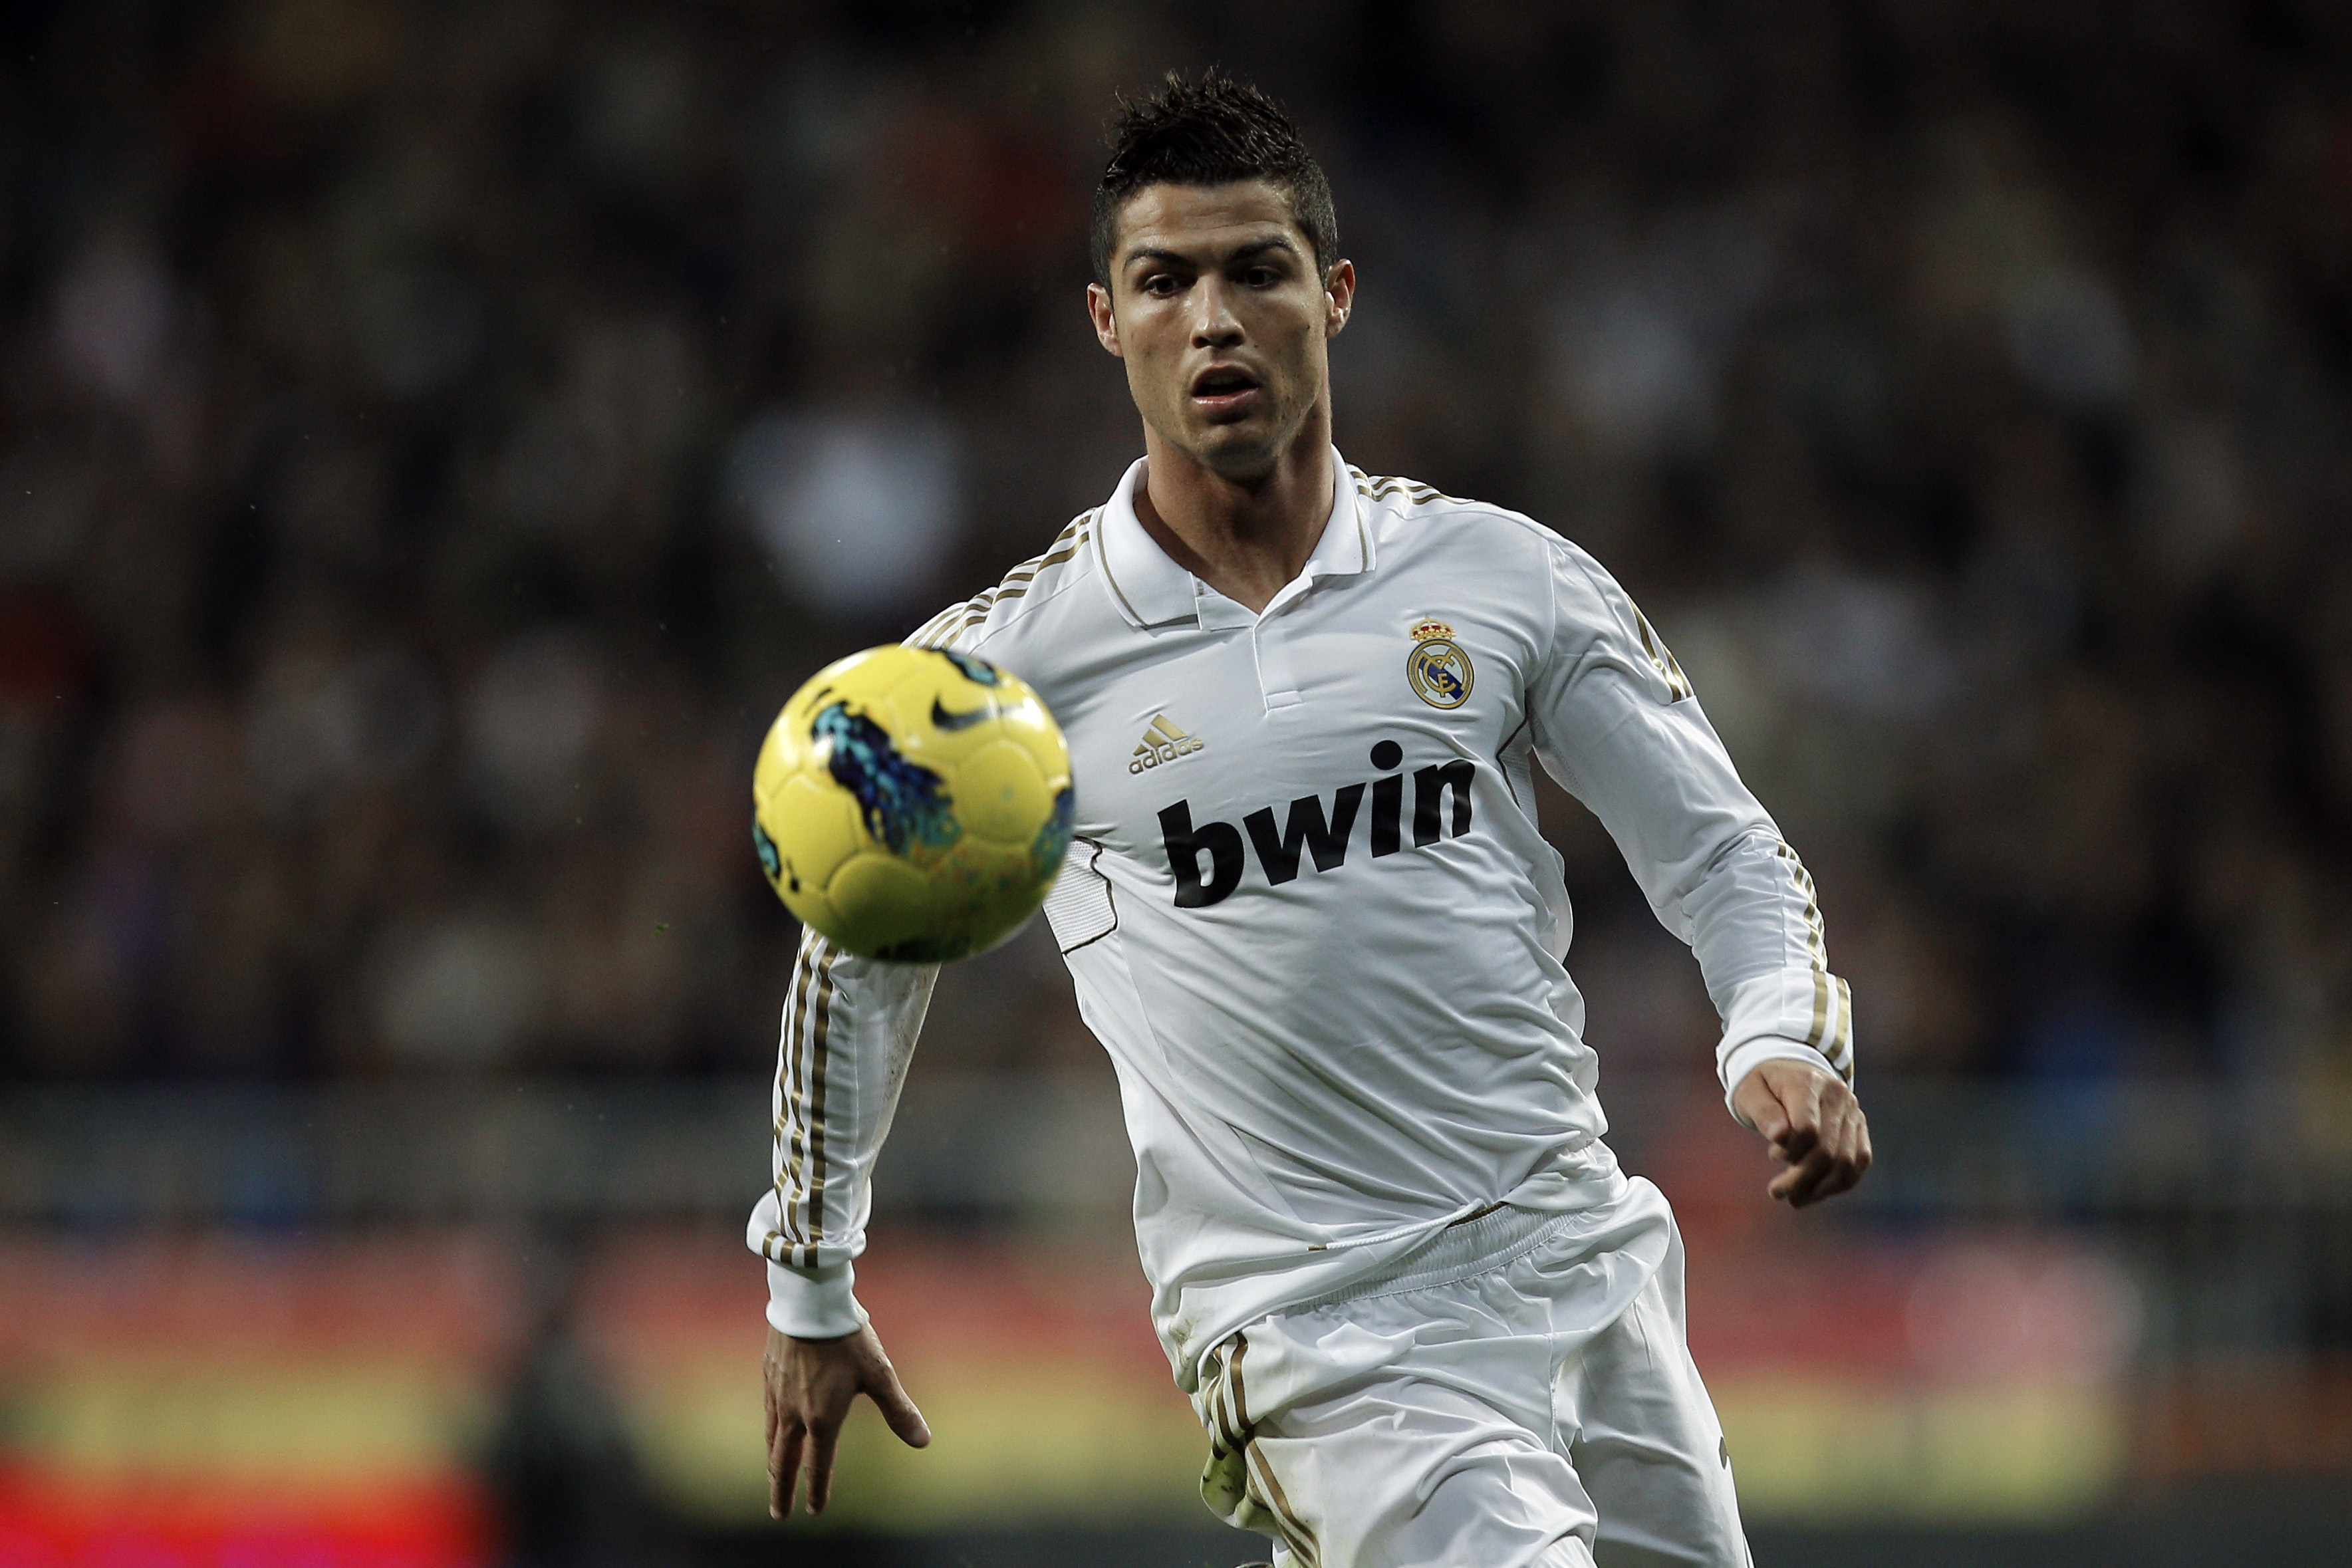 Cristiano Ronaldo Wallpaper Image Photos Pictures